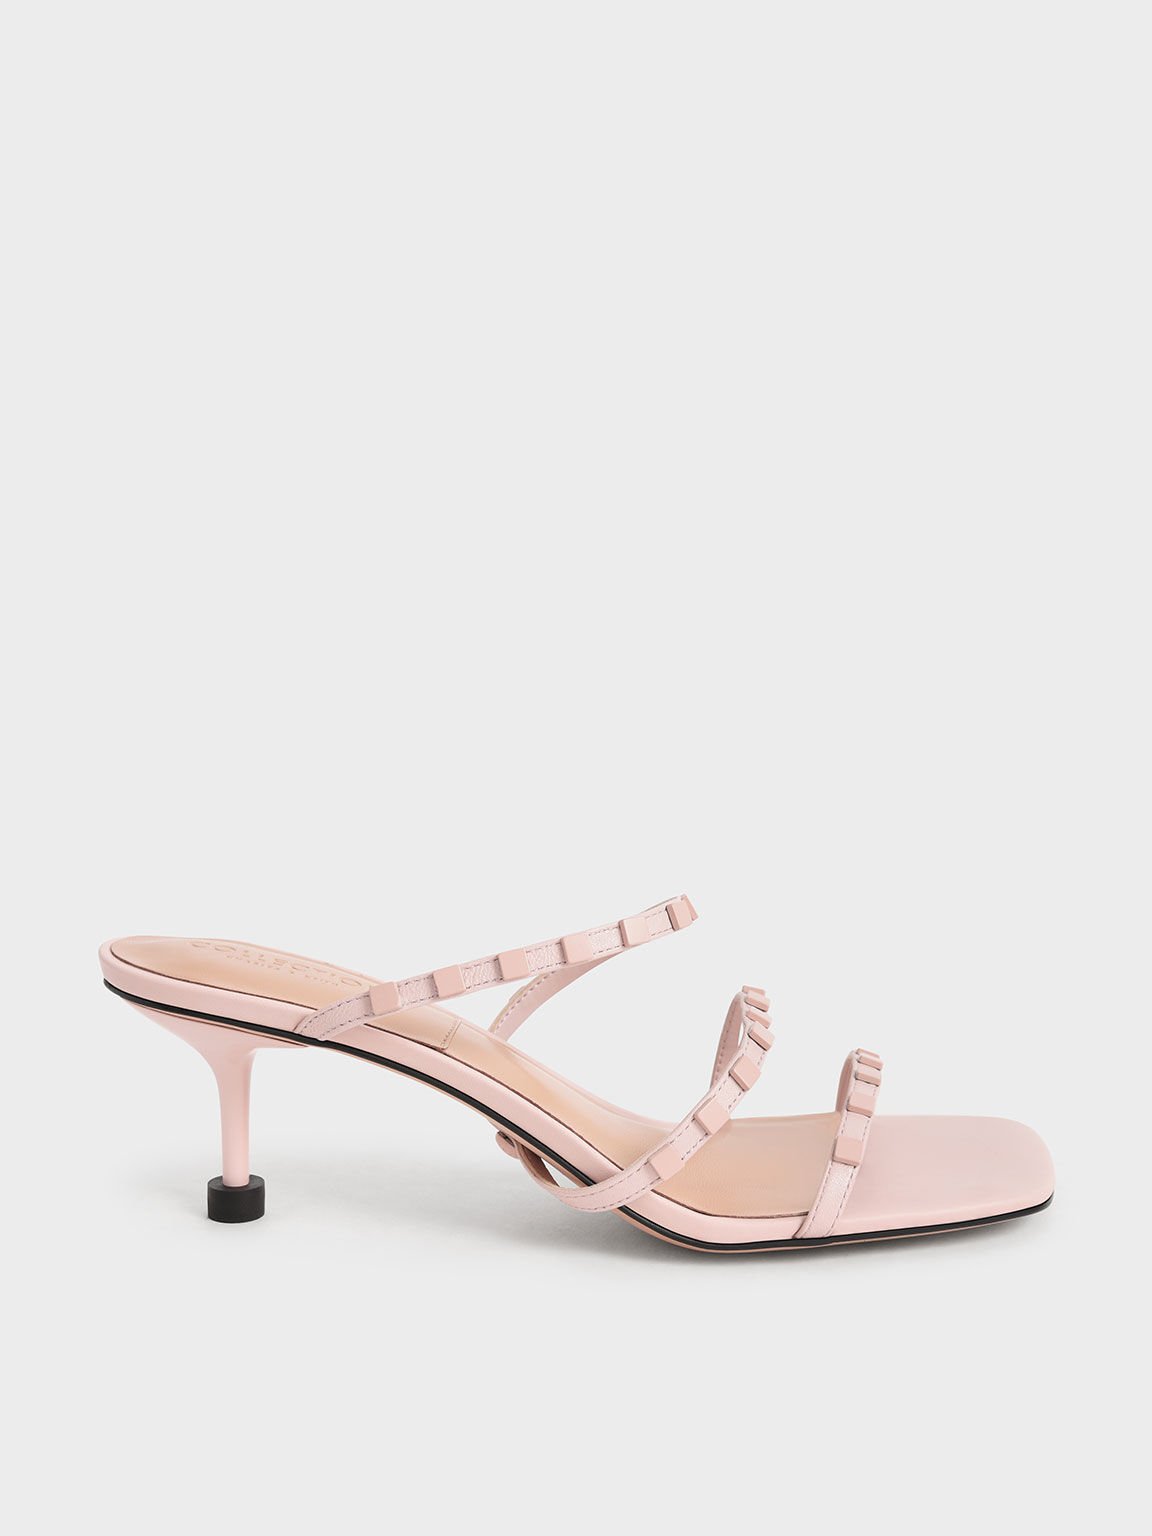 Sandal Sculptural Heel Leather Embellished, Pink, hi-res